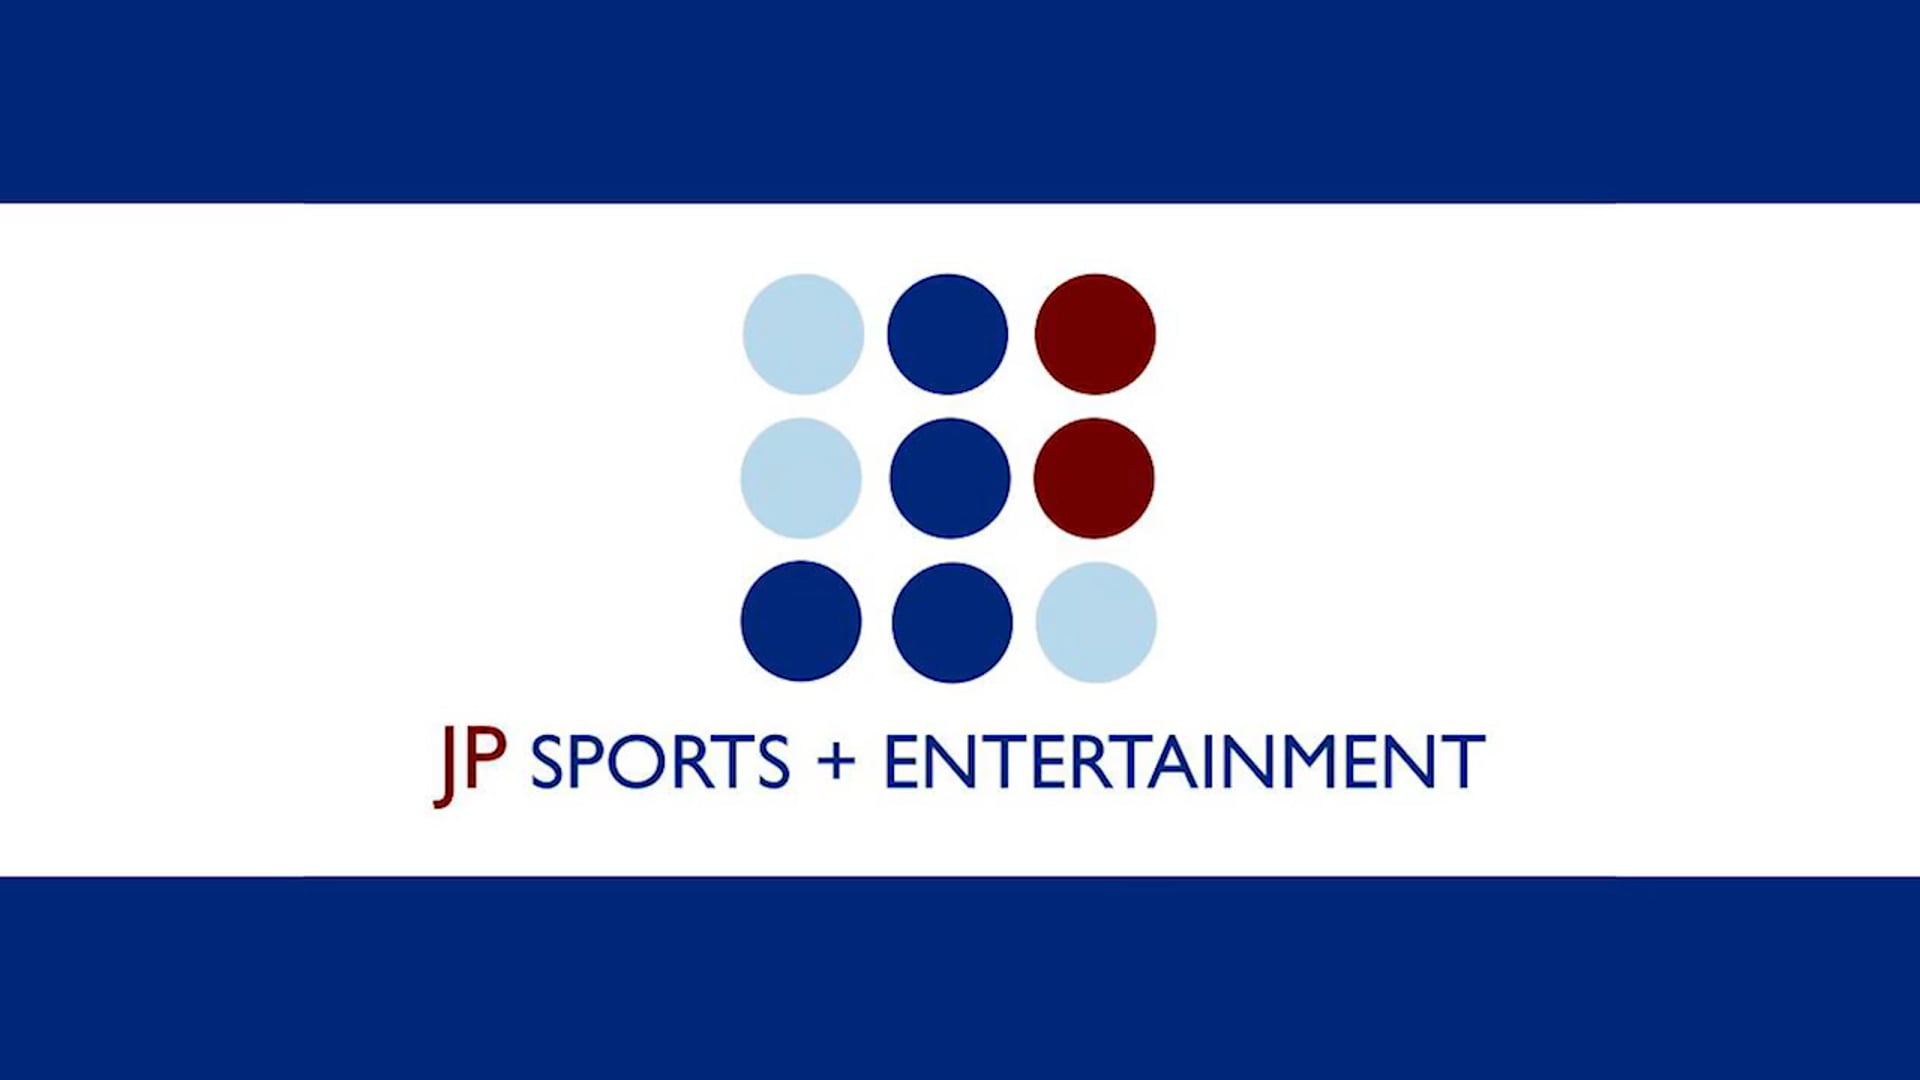 JP Sports + Entertainment Sizzle Reel